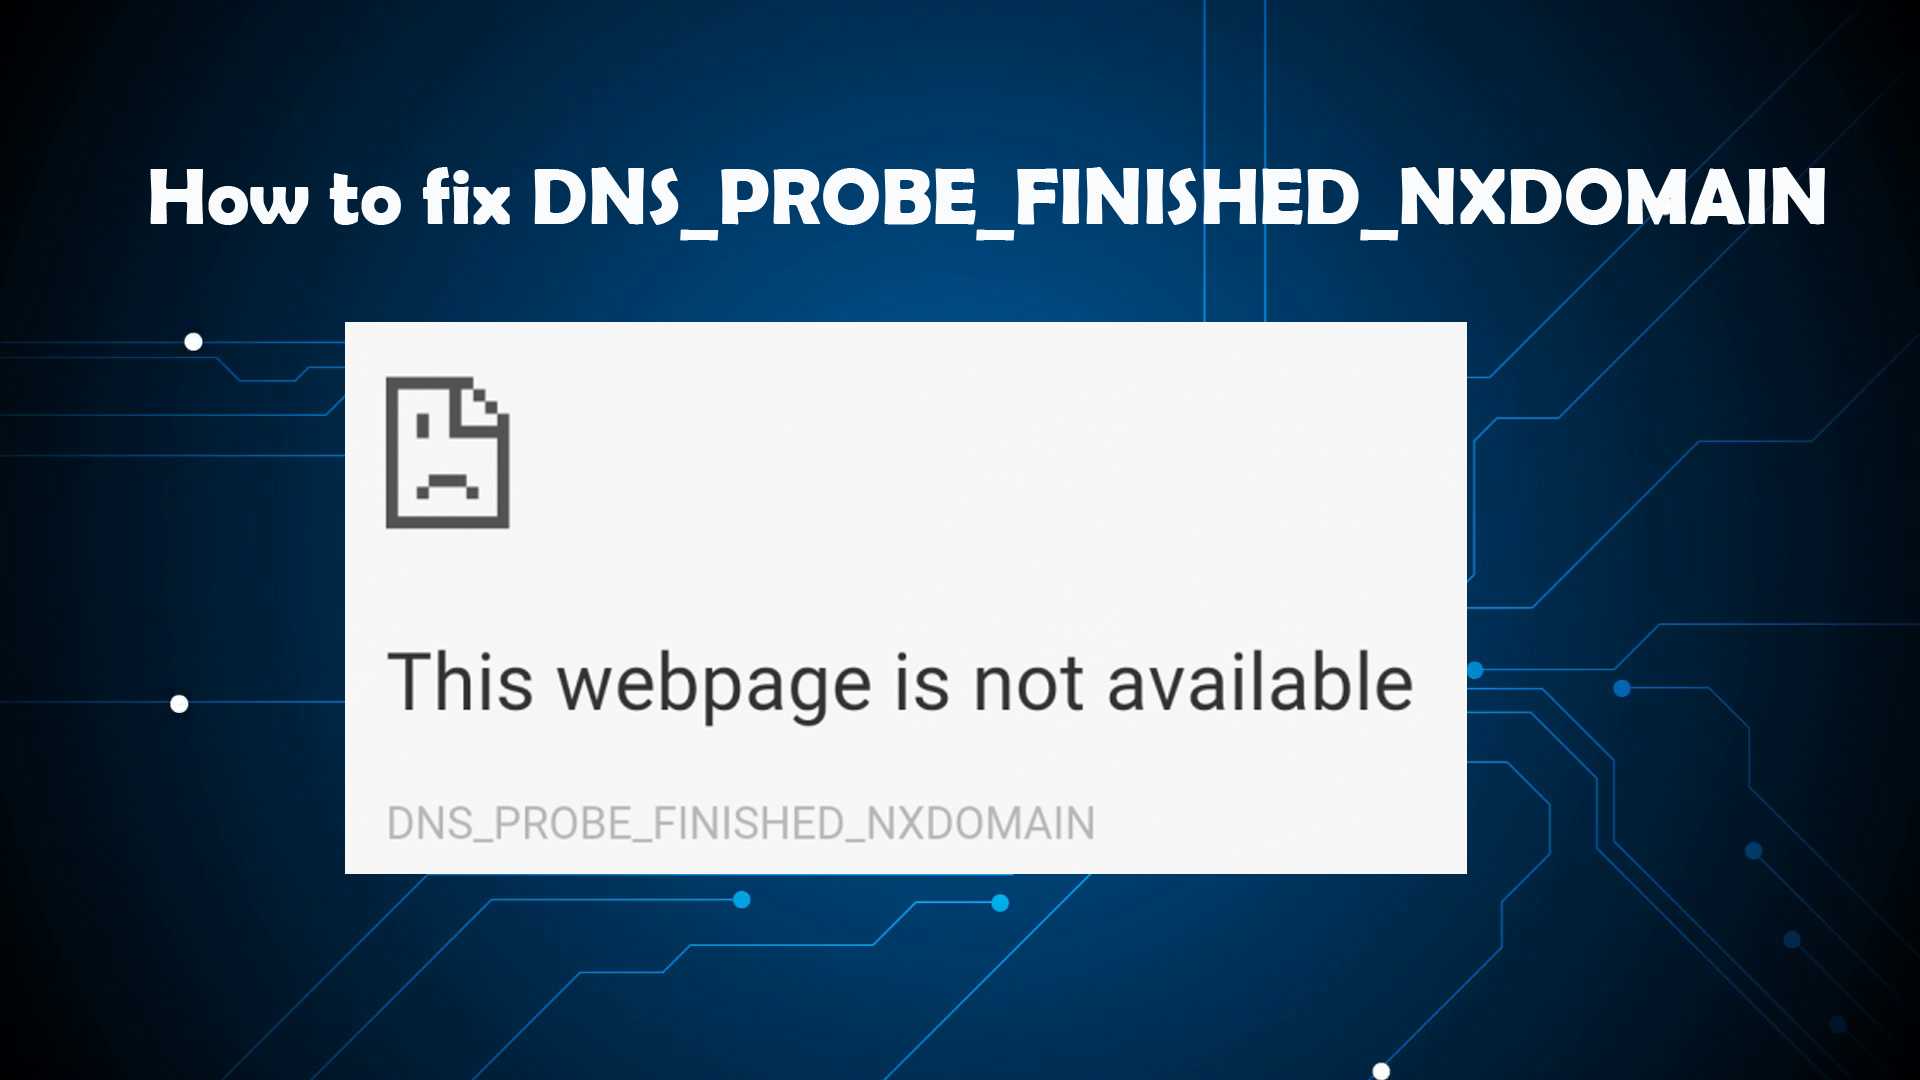 Ошибка dns_probe_finished_nxdomain - что это и как ее исправить?